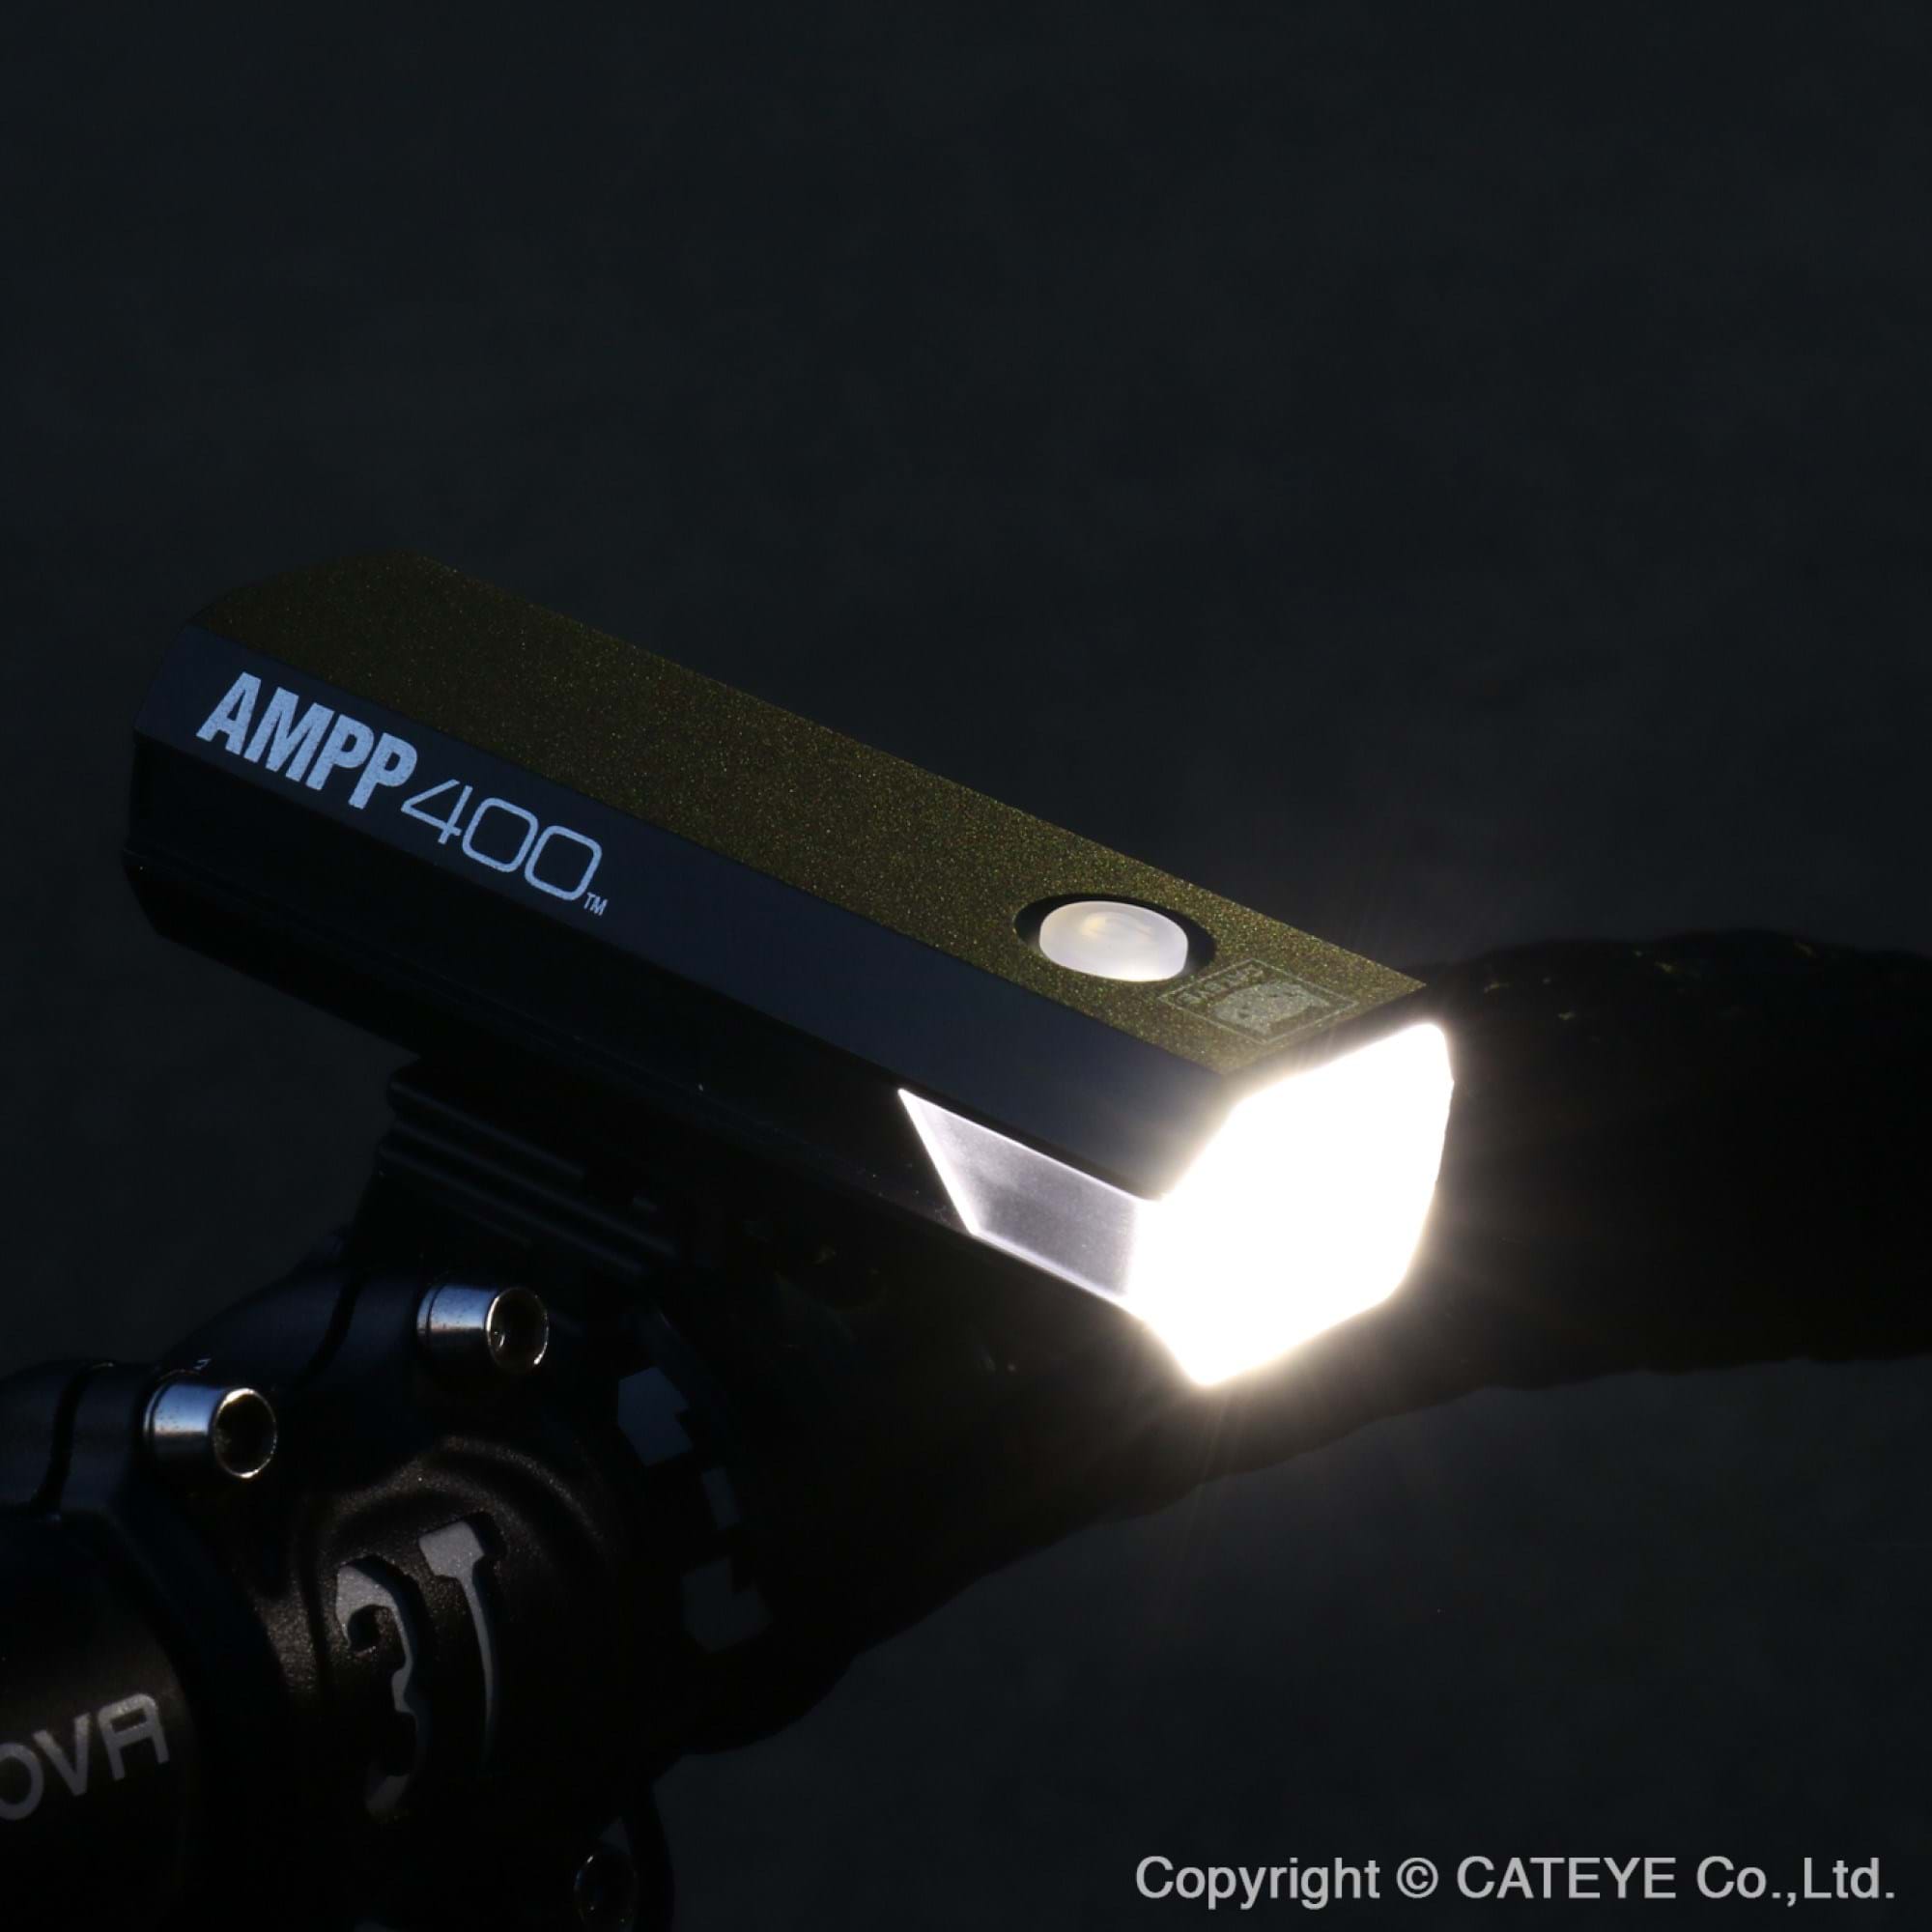 Cateye AMPP 900 Front Bike Light